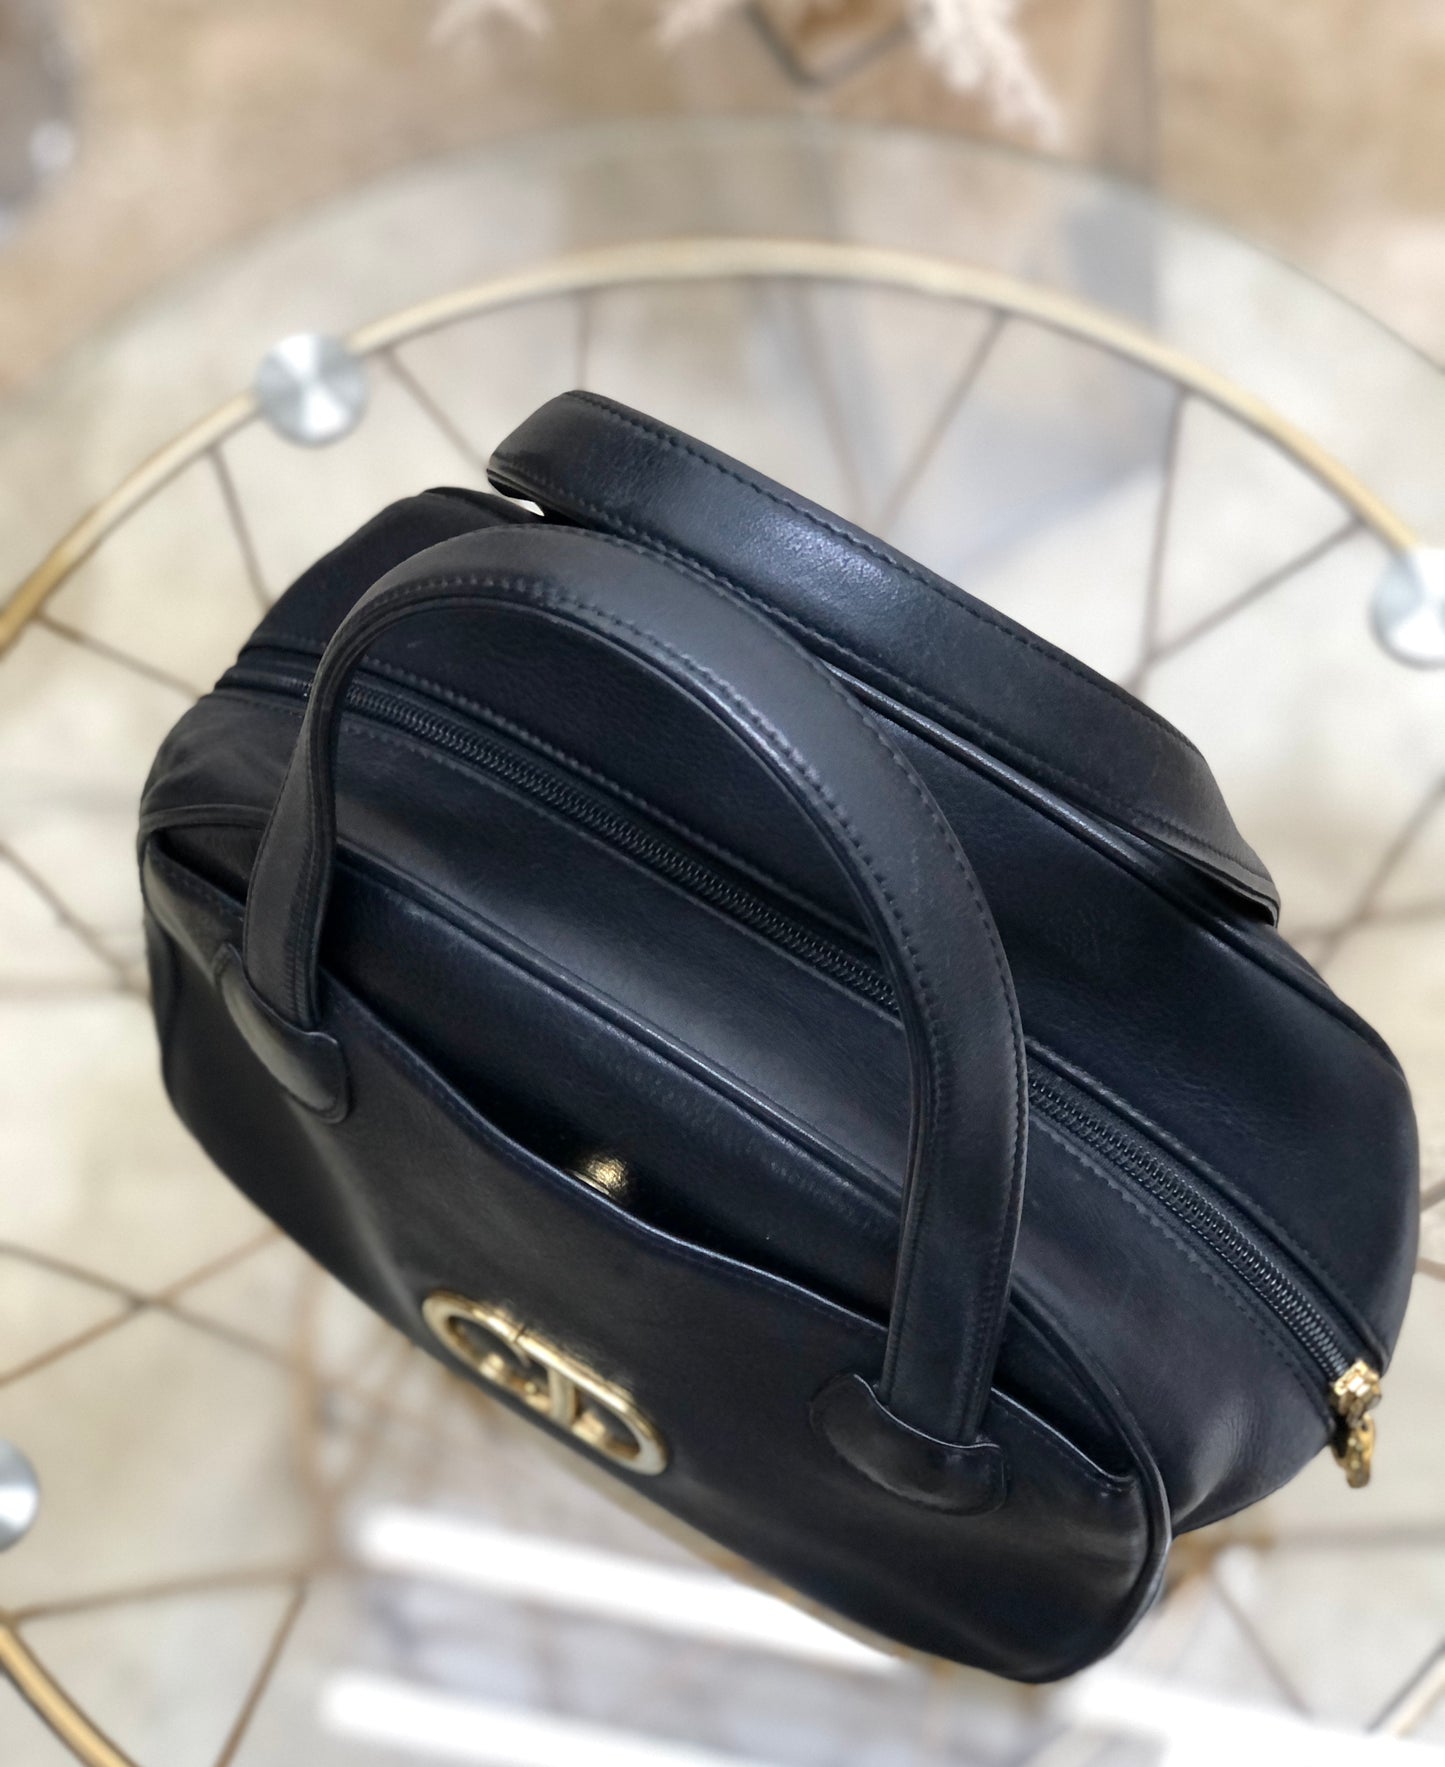 Christian Dior CD motif Embossed Leather Handbag Black Vintage Old c7ce8c